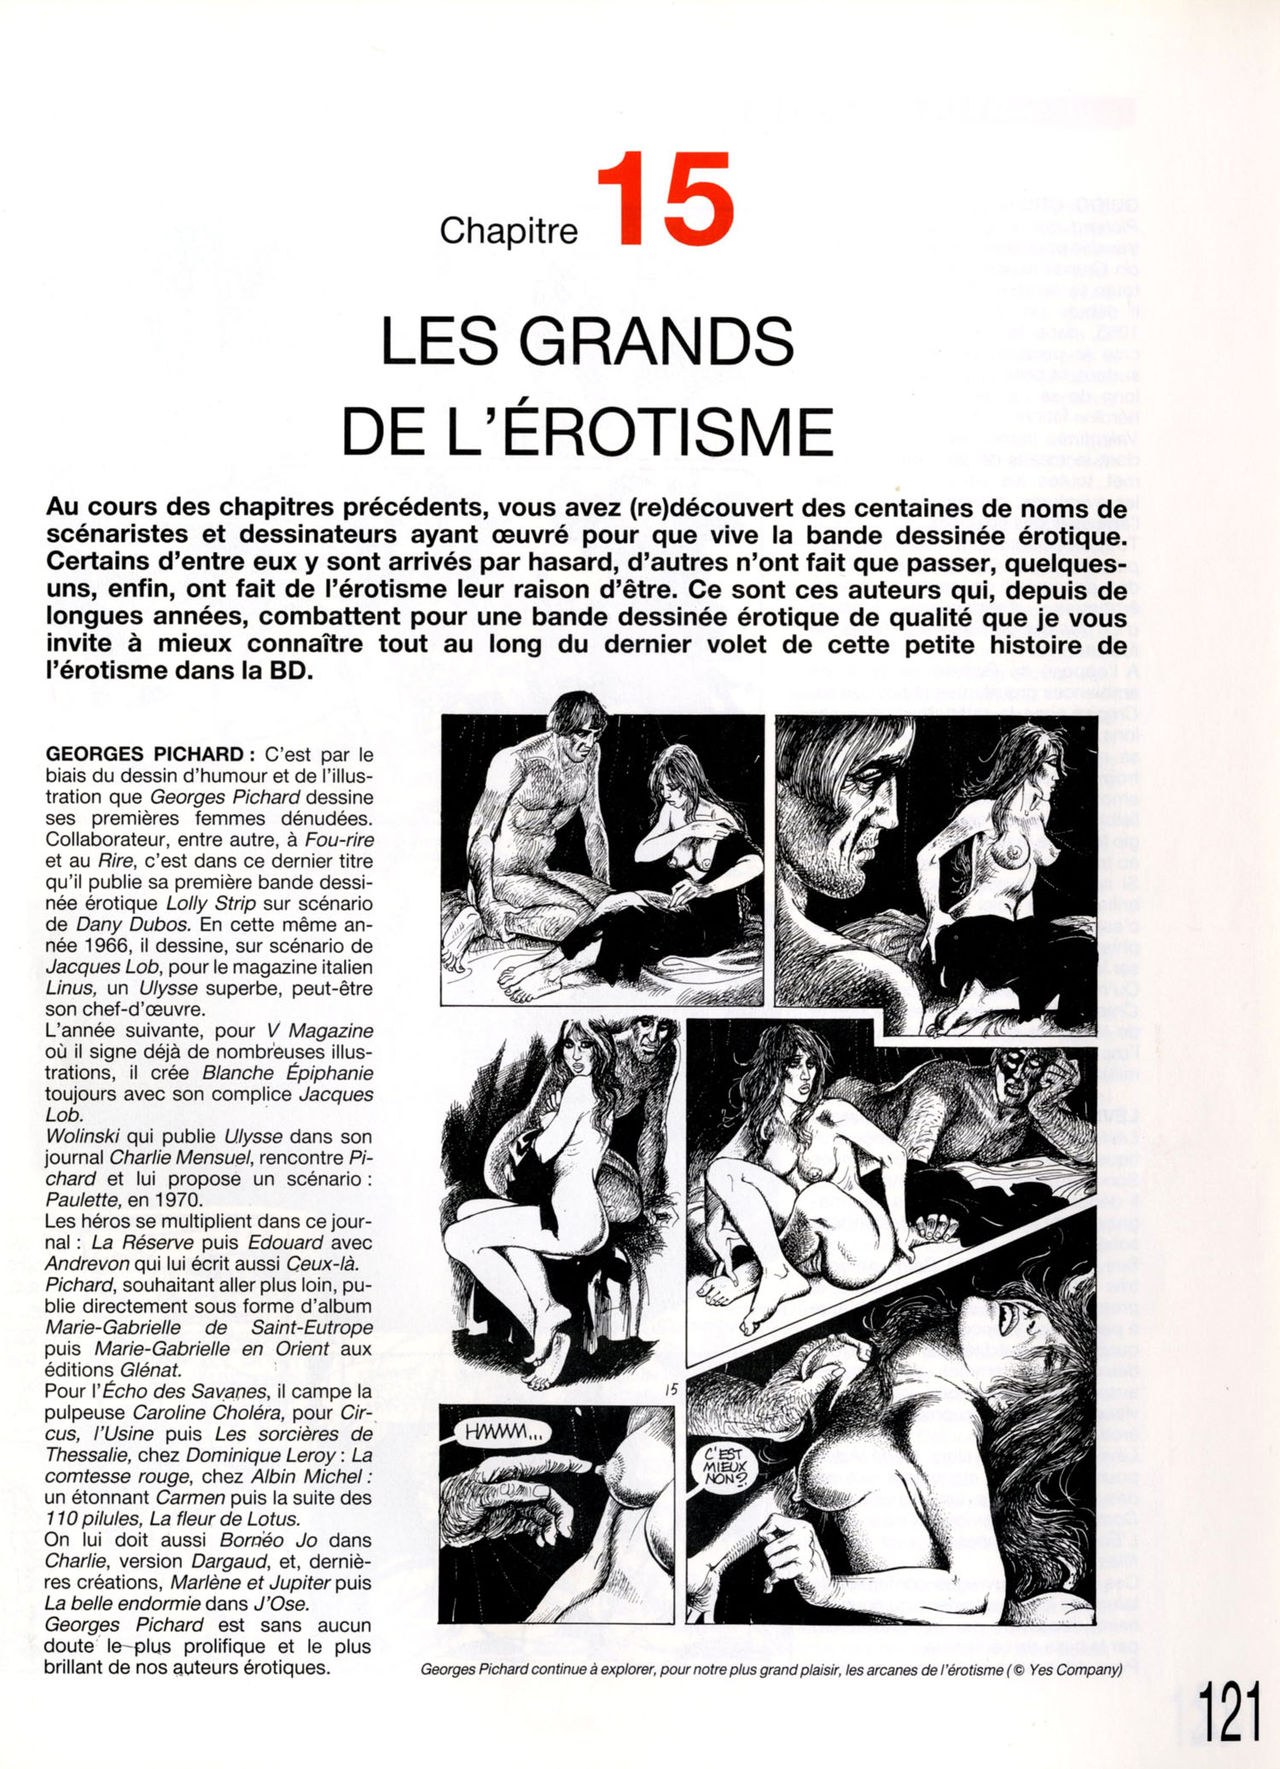 Petite histoire de lérotisme dans la BD - Volume 1 numero d'image 105